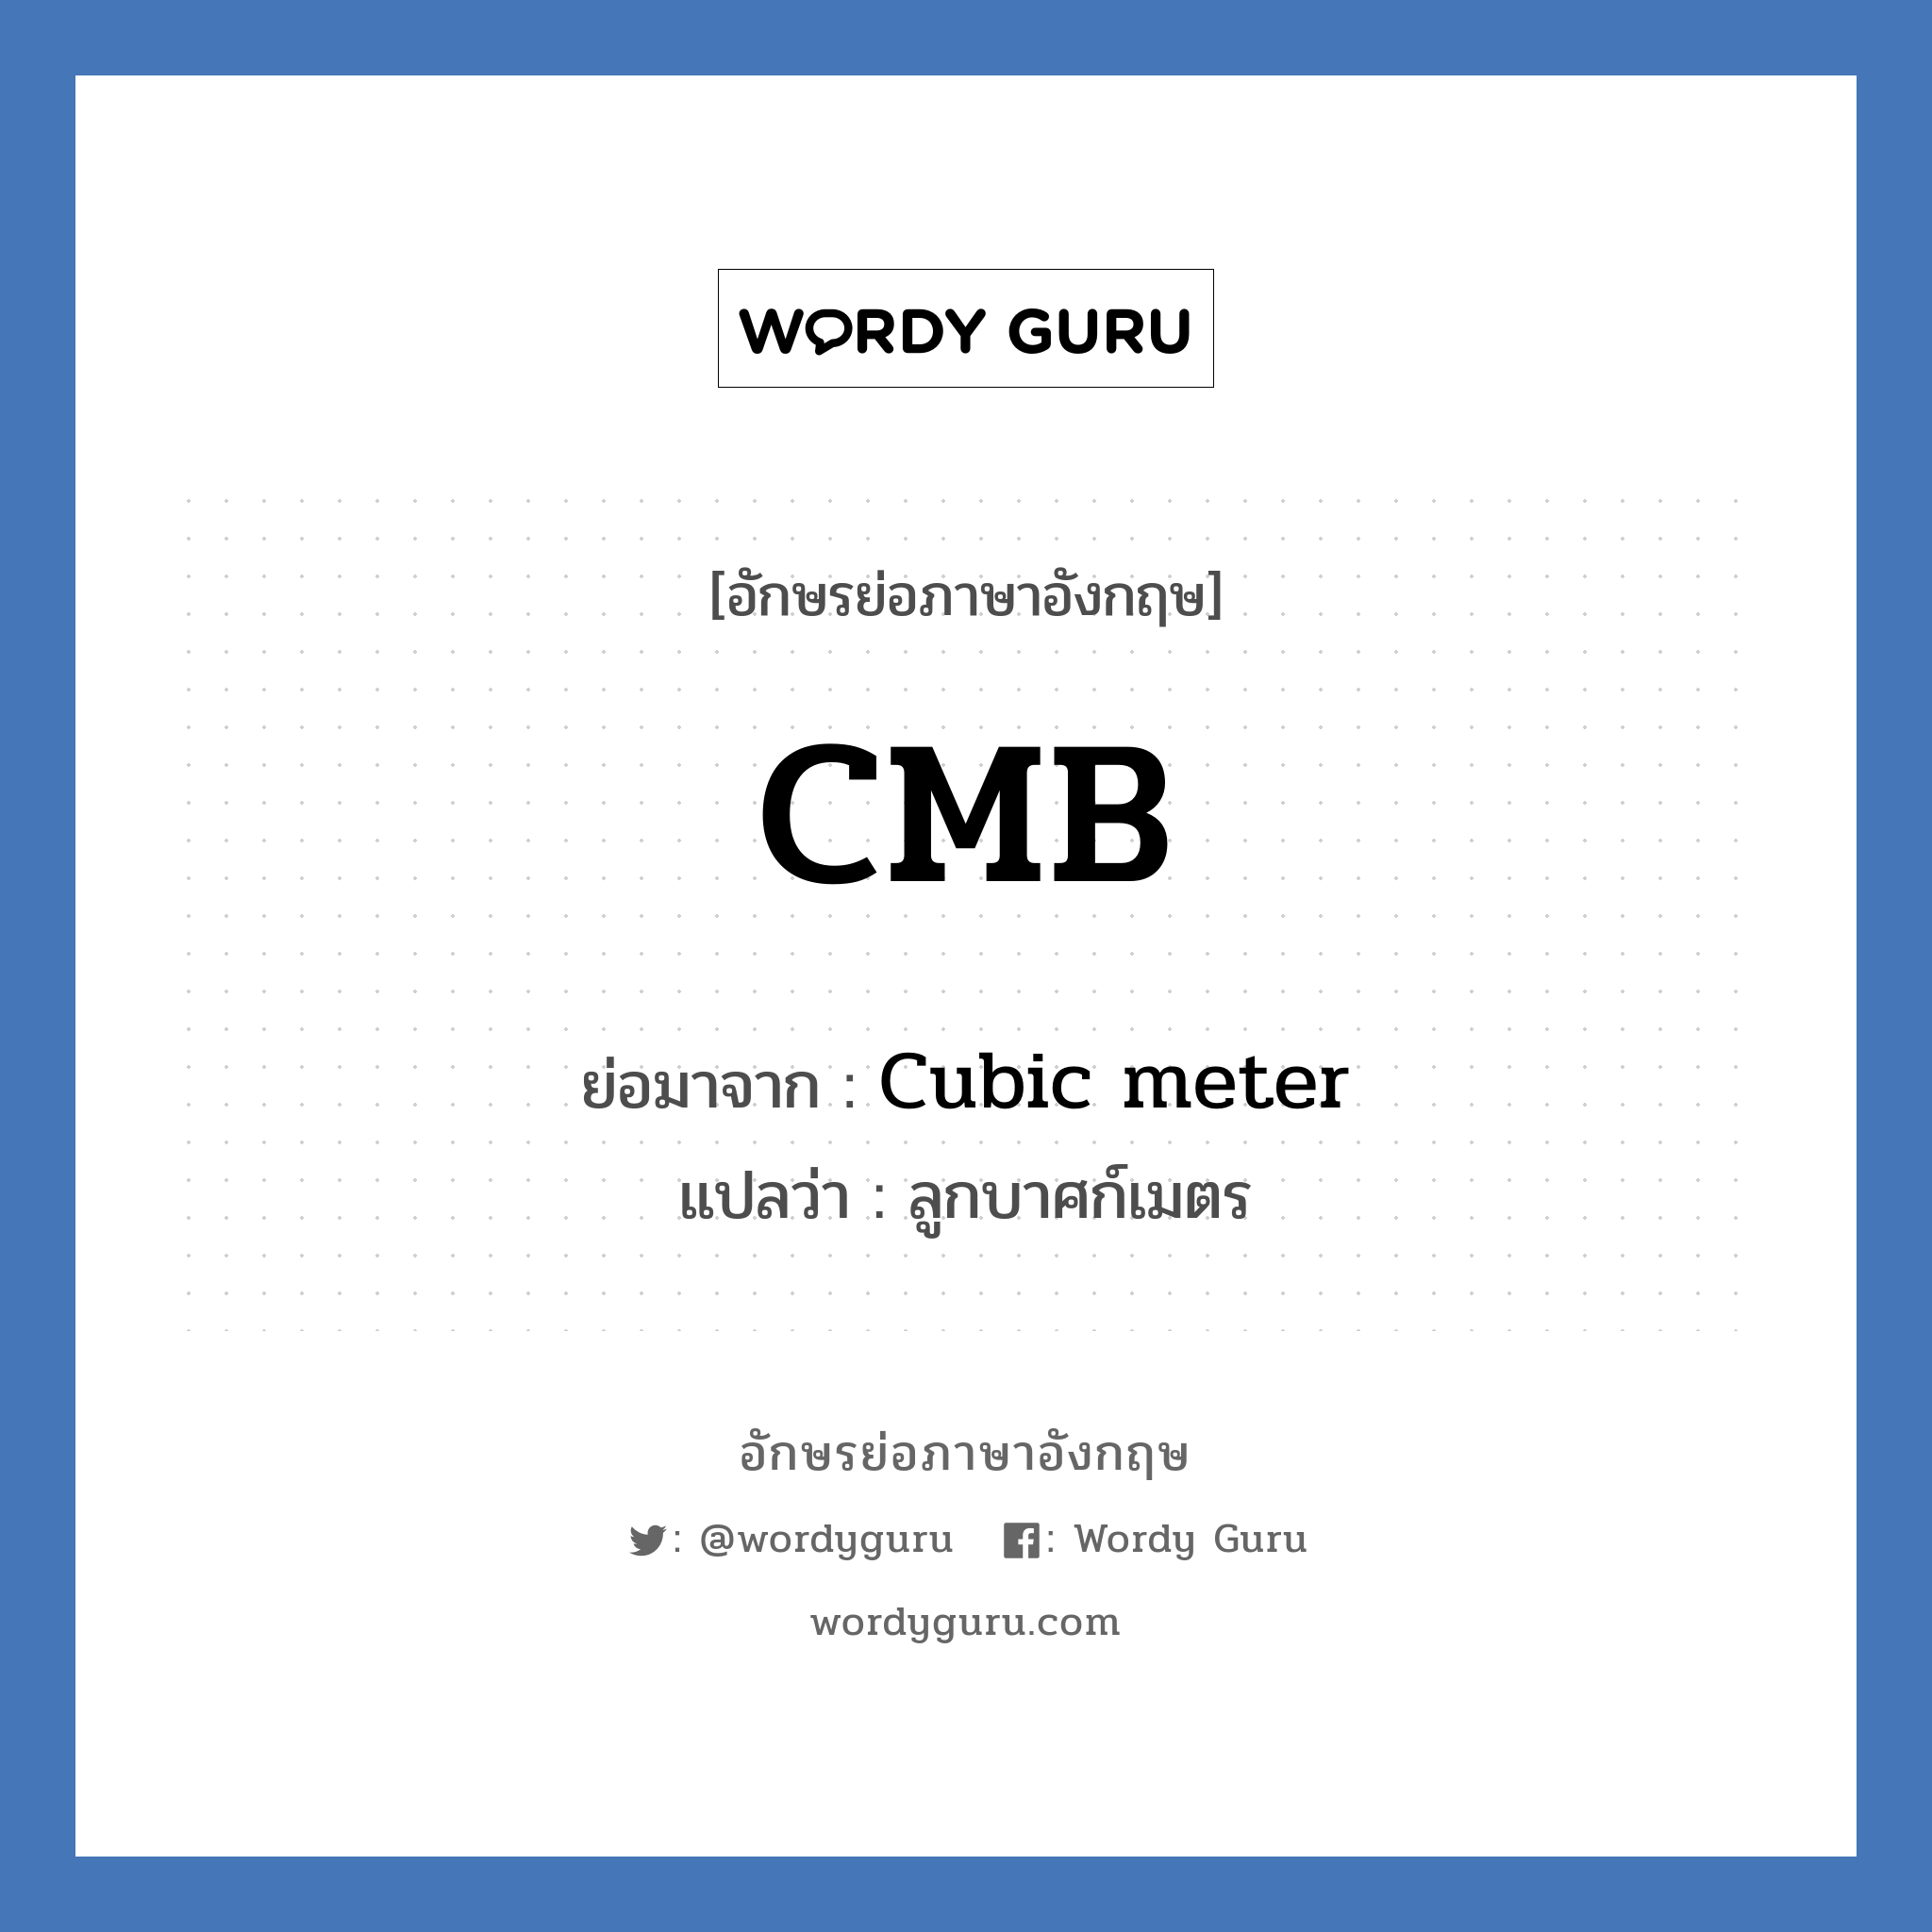 CMB ย่อมาจาก? แปลว่า?, อักษรย่อภาษาอังกฤษ CMB ย่อมาจาก Cubic meter แปลว่า ลูกบาศก์เมตร